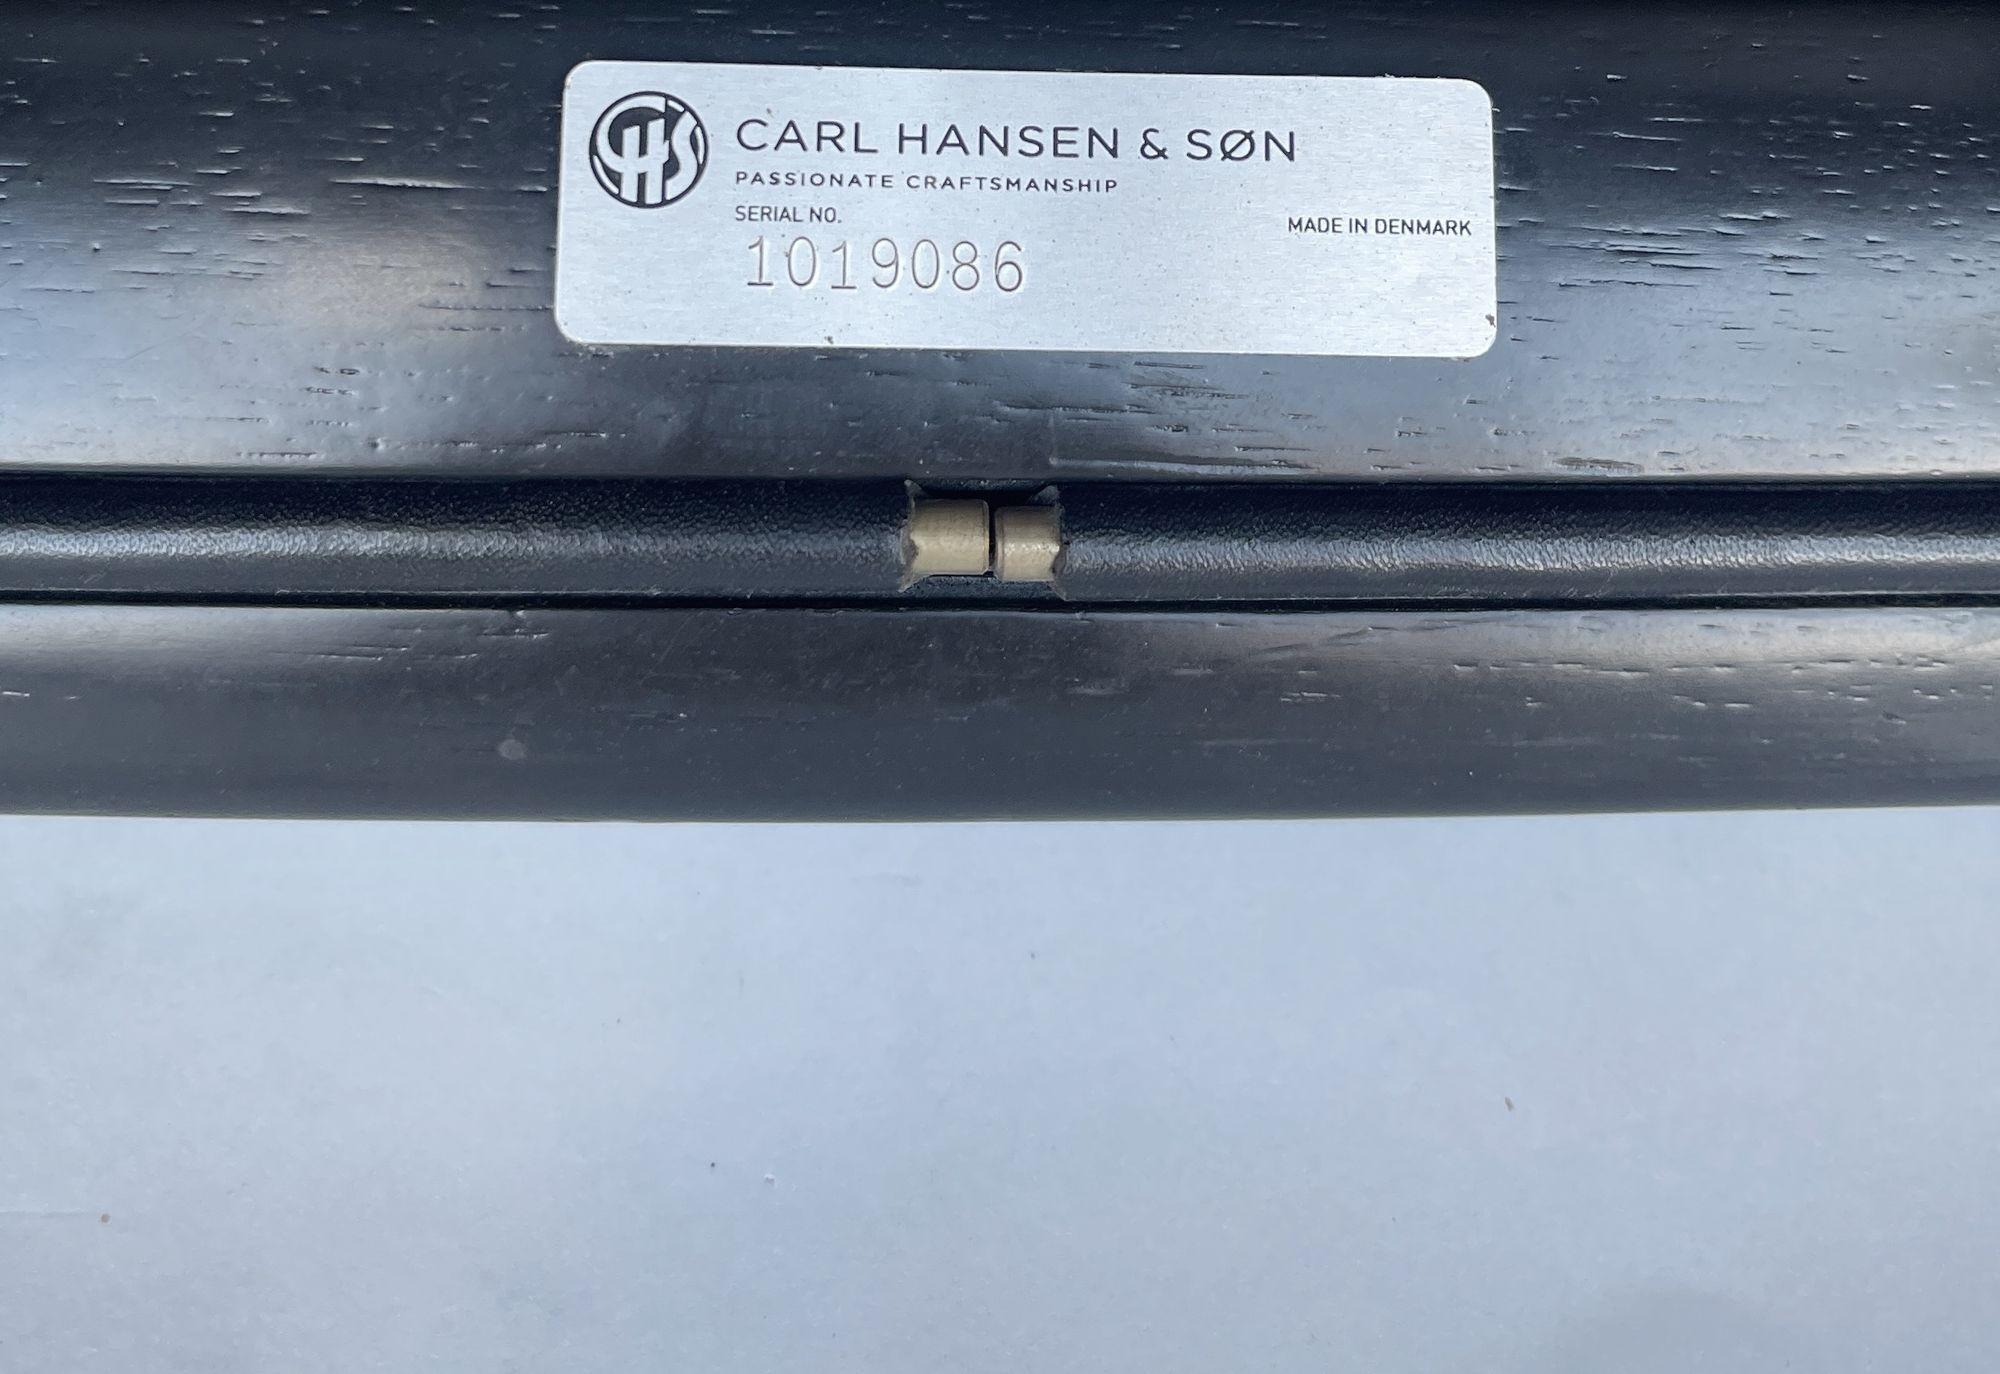 Paire de tabourets en bois avec sièges en cuir de Carl Hansen & Son.
 
Fabriqué au Danemark.
 
Numéro de série 1019086.